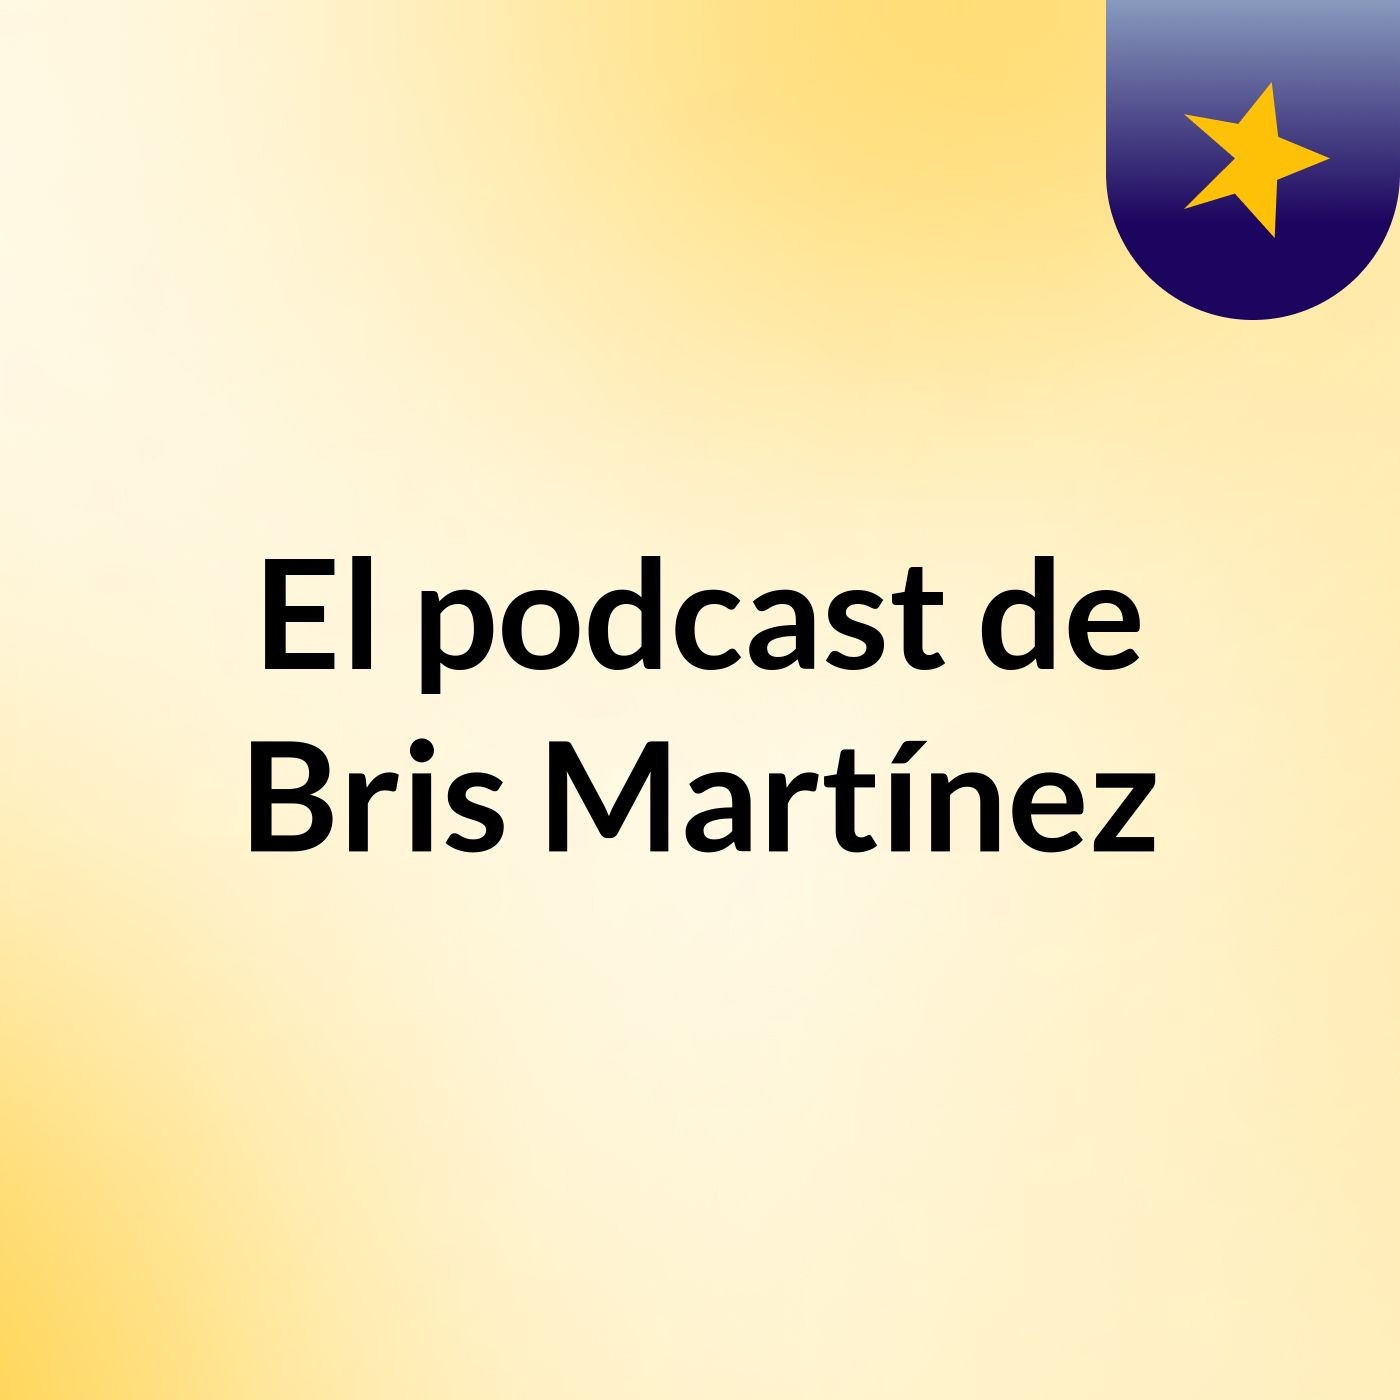 El podcast de Bris Martínez